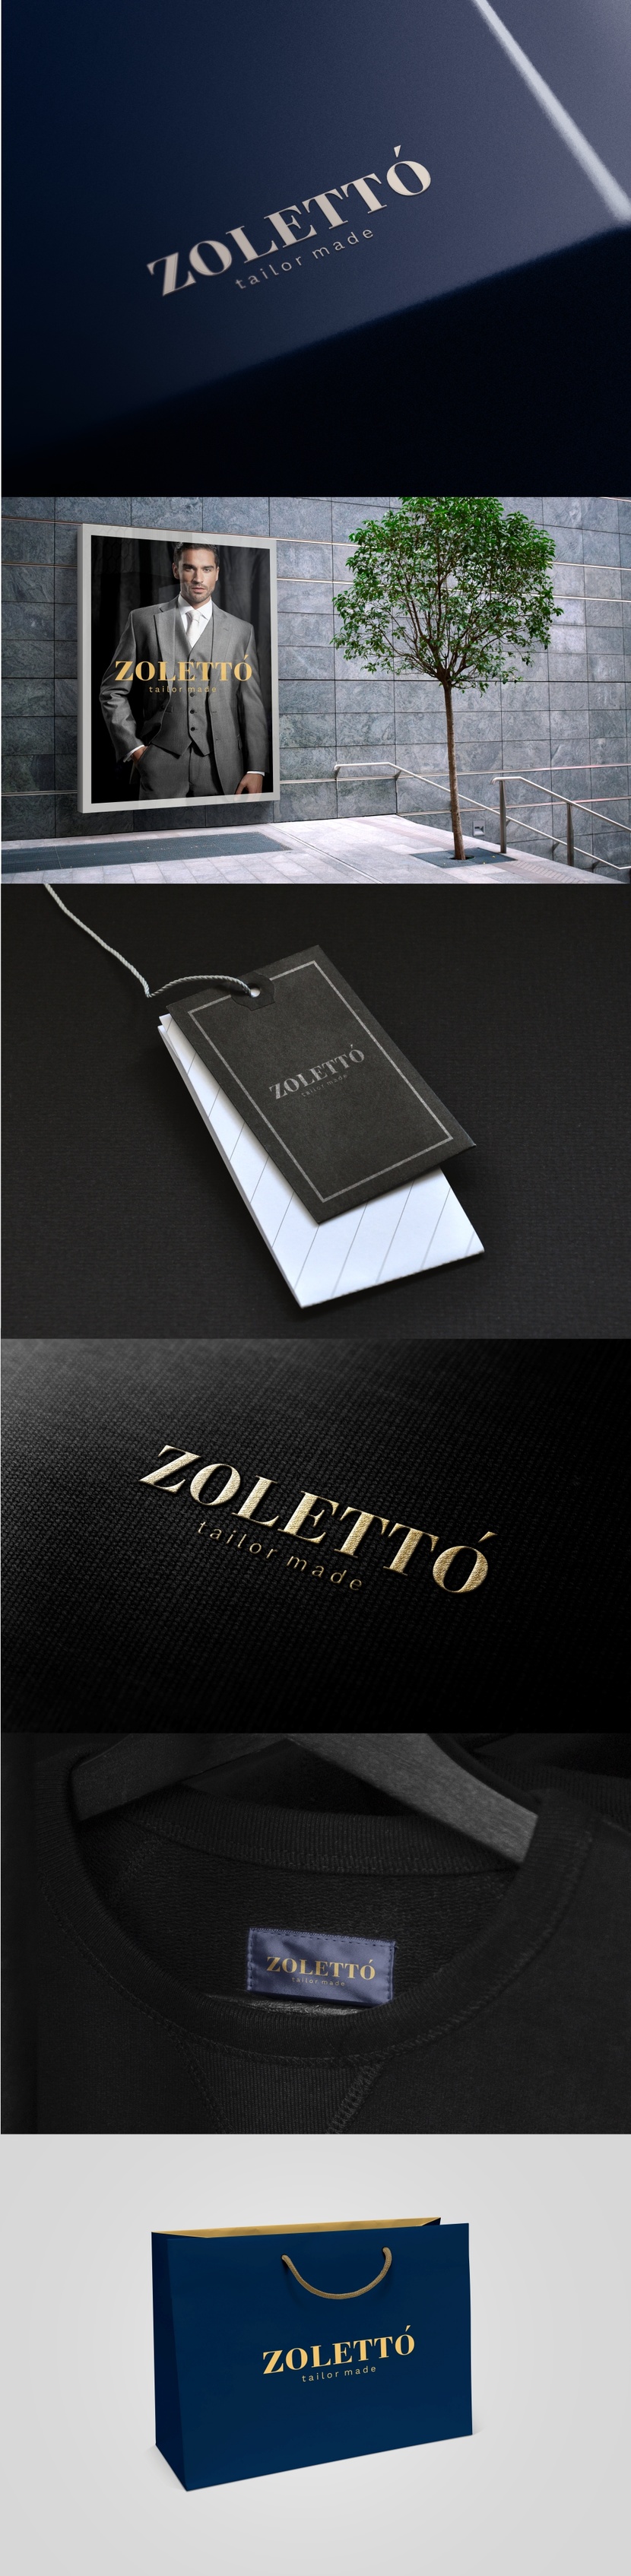 Конкурс на создание логотипа под обновленное название для ателье по пошиву мужского классического гардероба - Zoletto.  -  автор EVGENIA ZHURANOVA